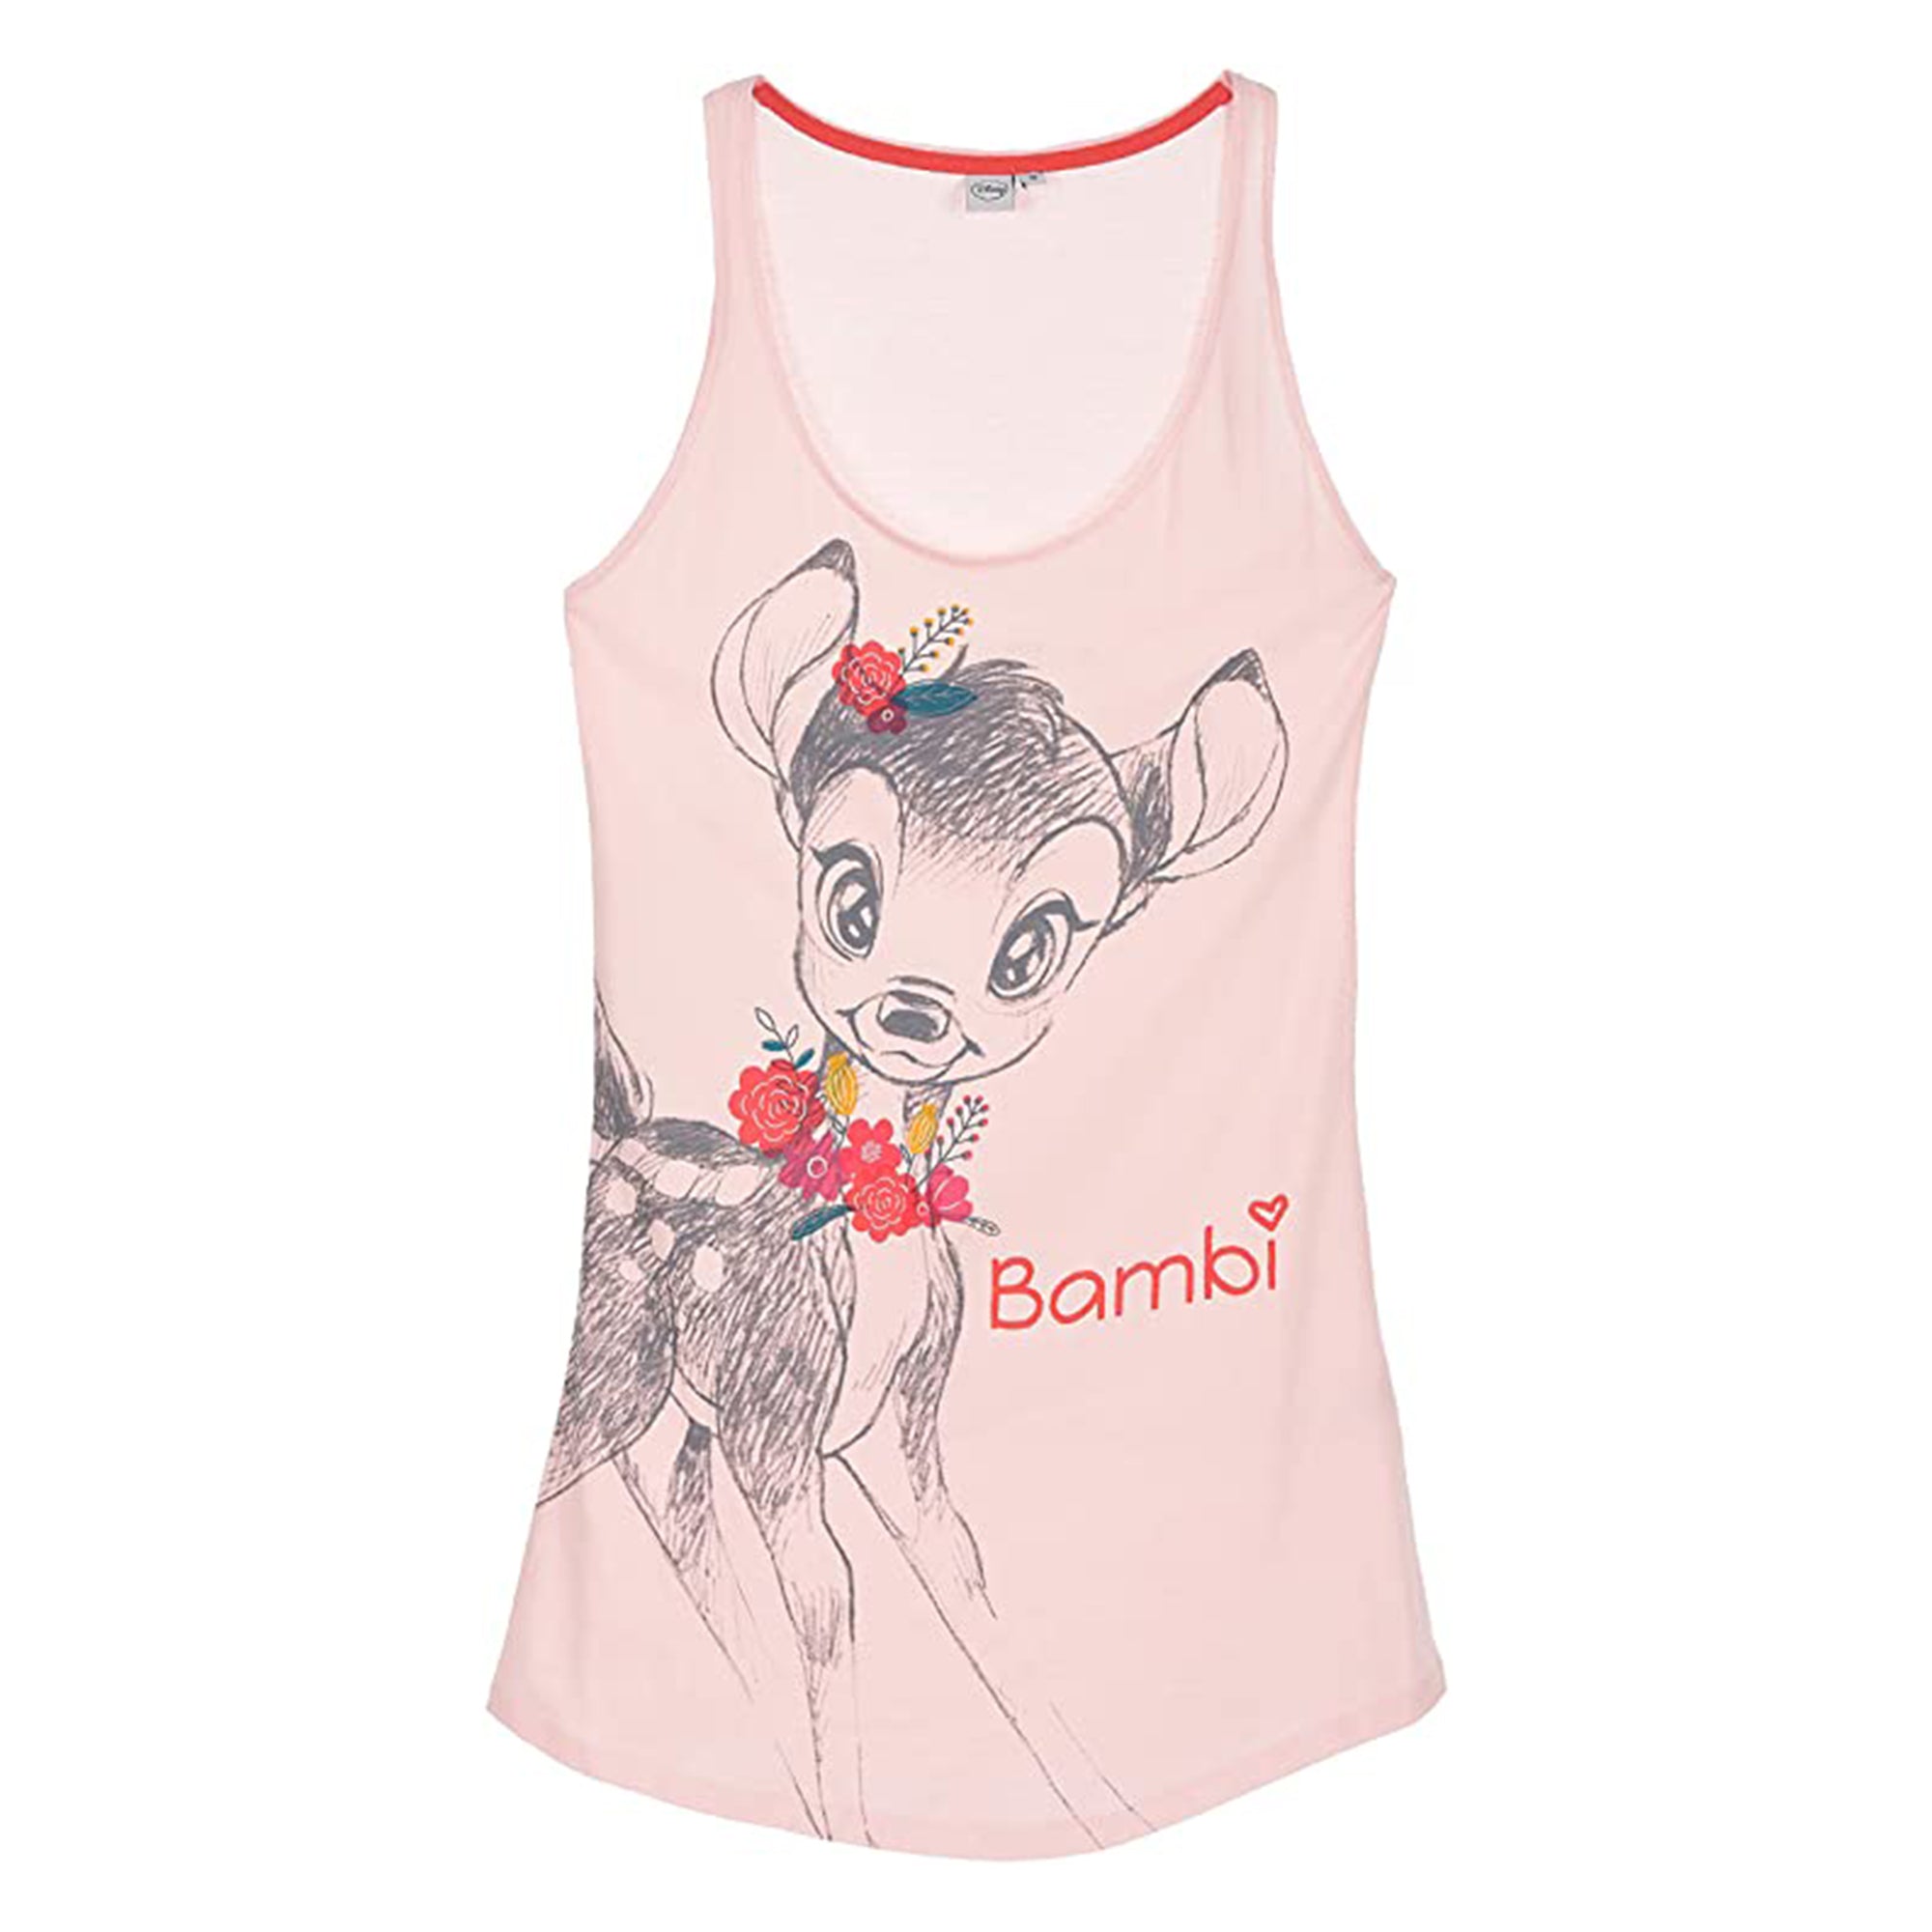 Pigiama camicia da notte donna Disney Bambi in cotone stampato 3231